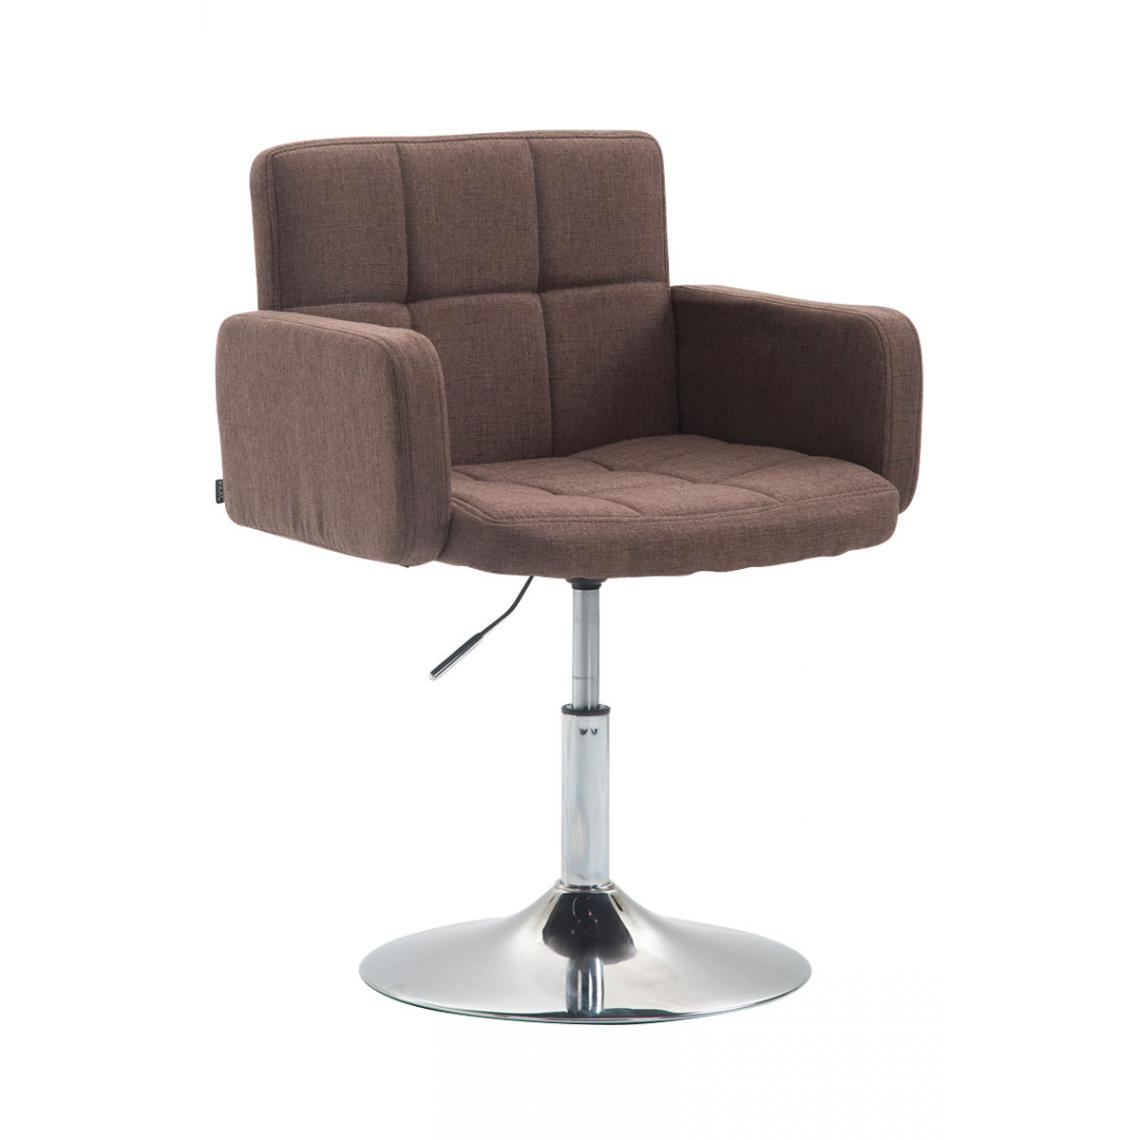 Icaverne - Joli Tissu pour chaise longue selection Nouakchott Angeles couleur marron - Transats, chaises longues